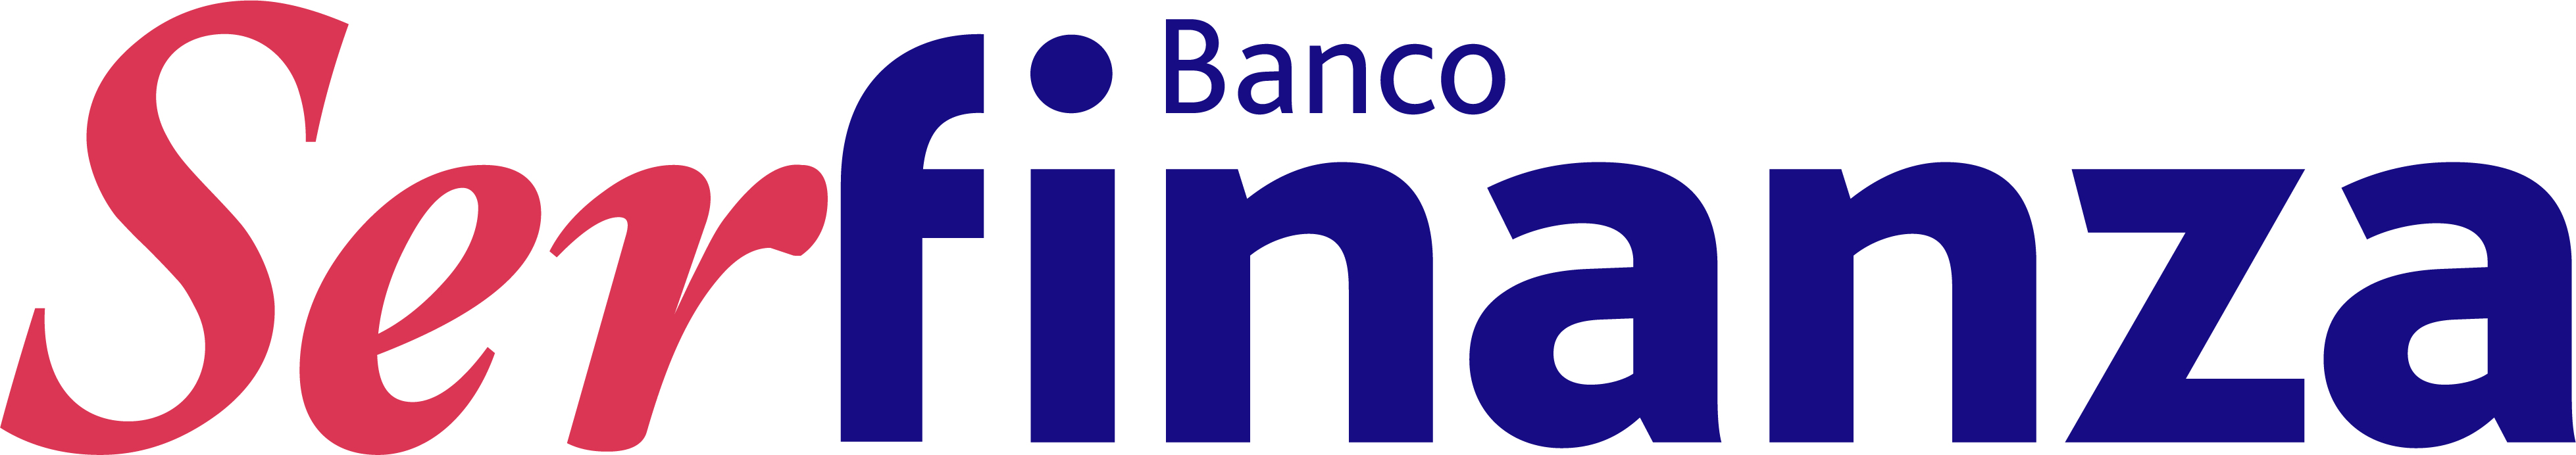 Banco Serfinanza